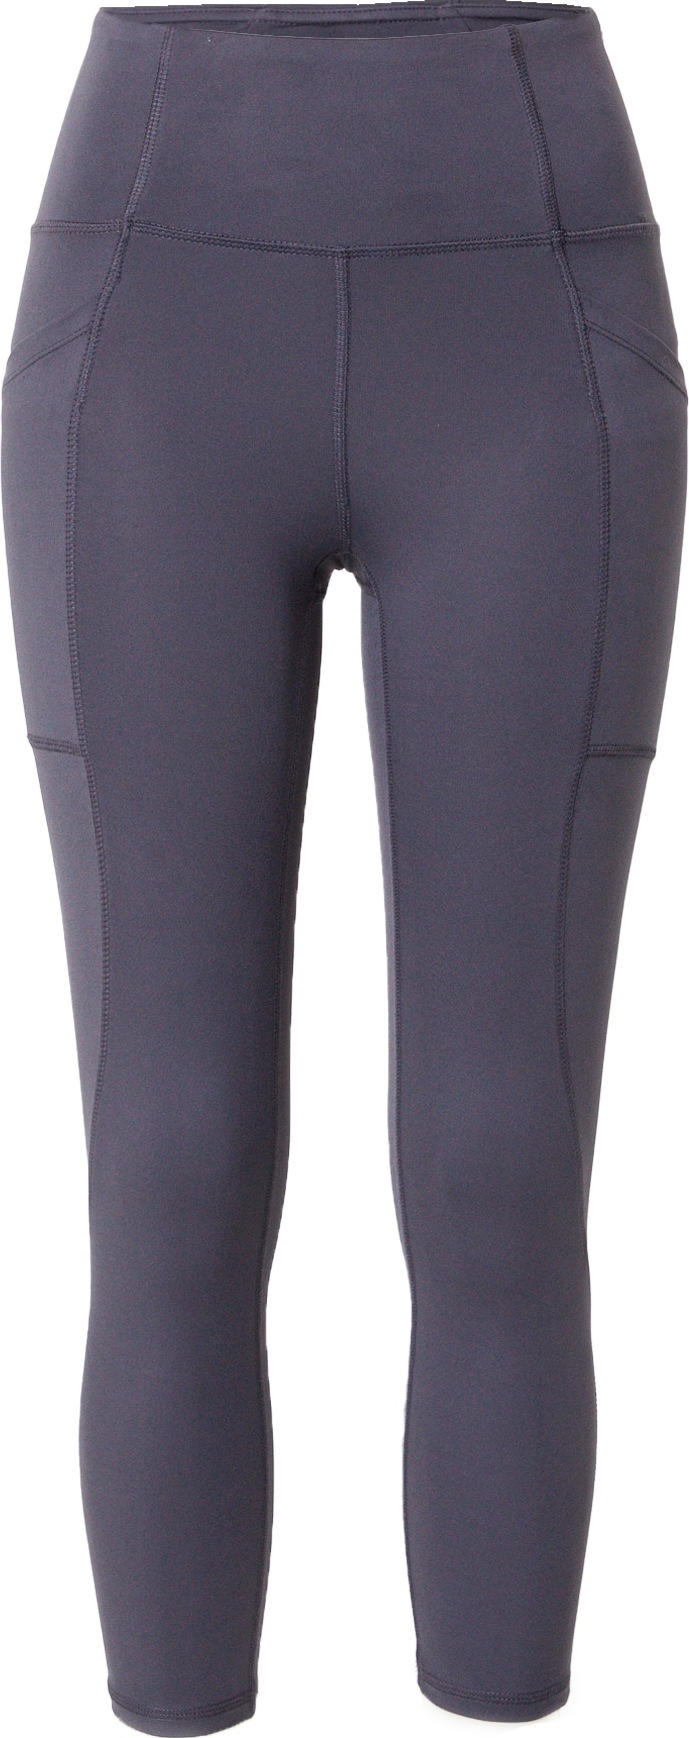 Marika Sportovní kalhoty 'ABIGAIL' marine modrá / šedá